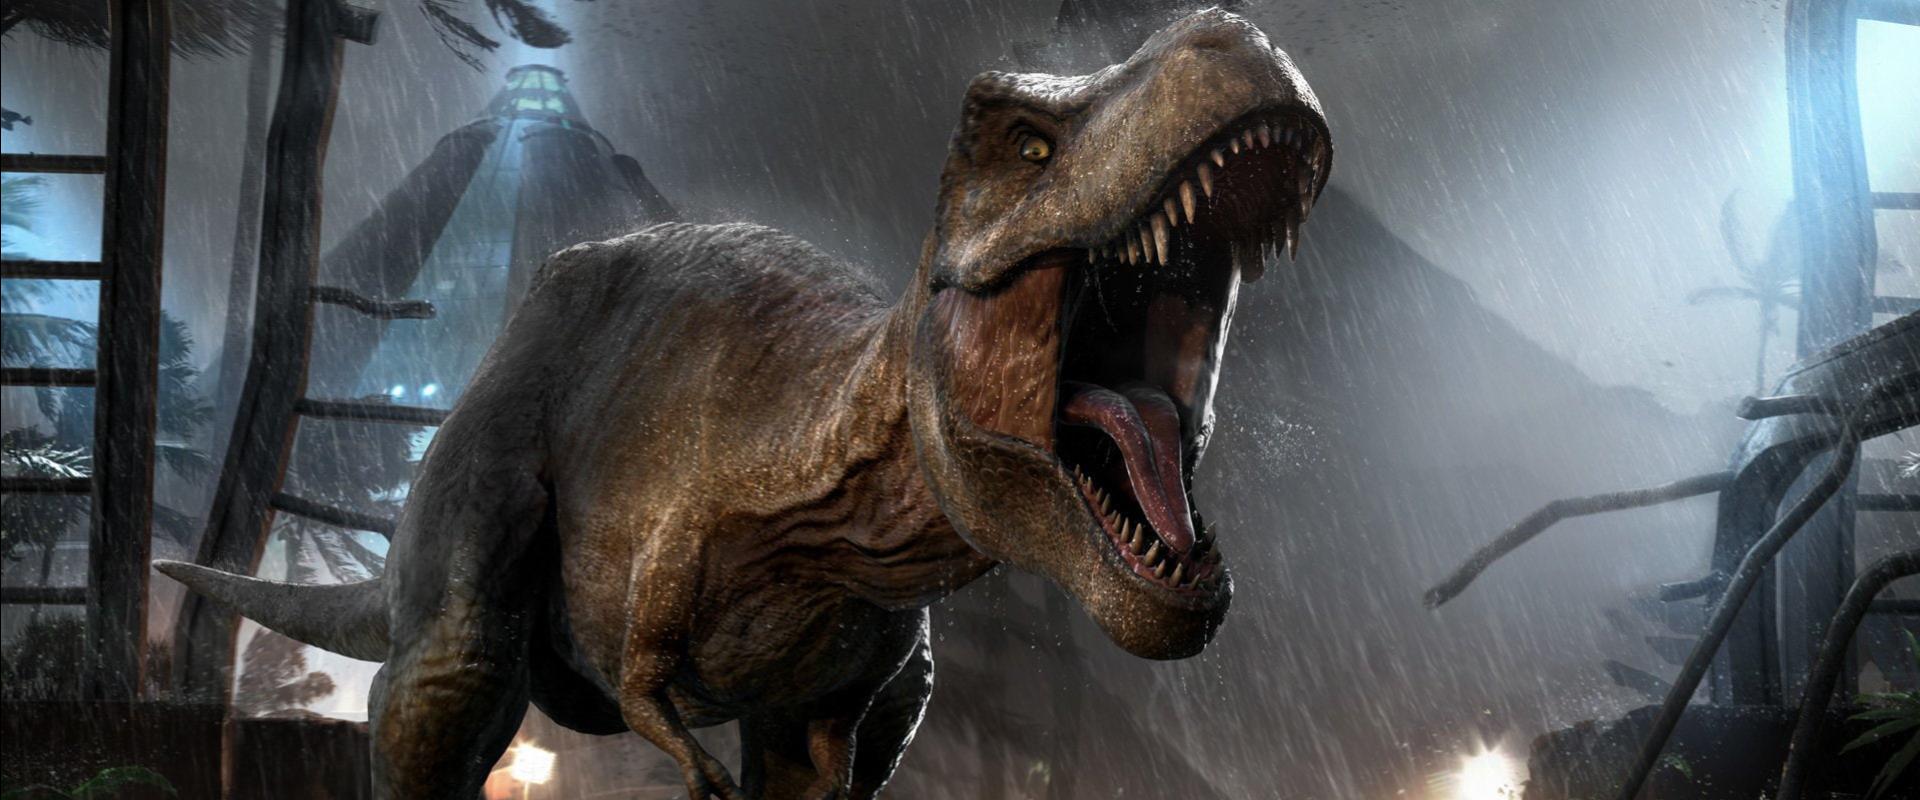 Izzasztóan izgalmasnak ígérkezik a Jurassic Park Survival  a trailer alapján